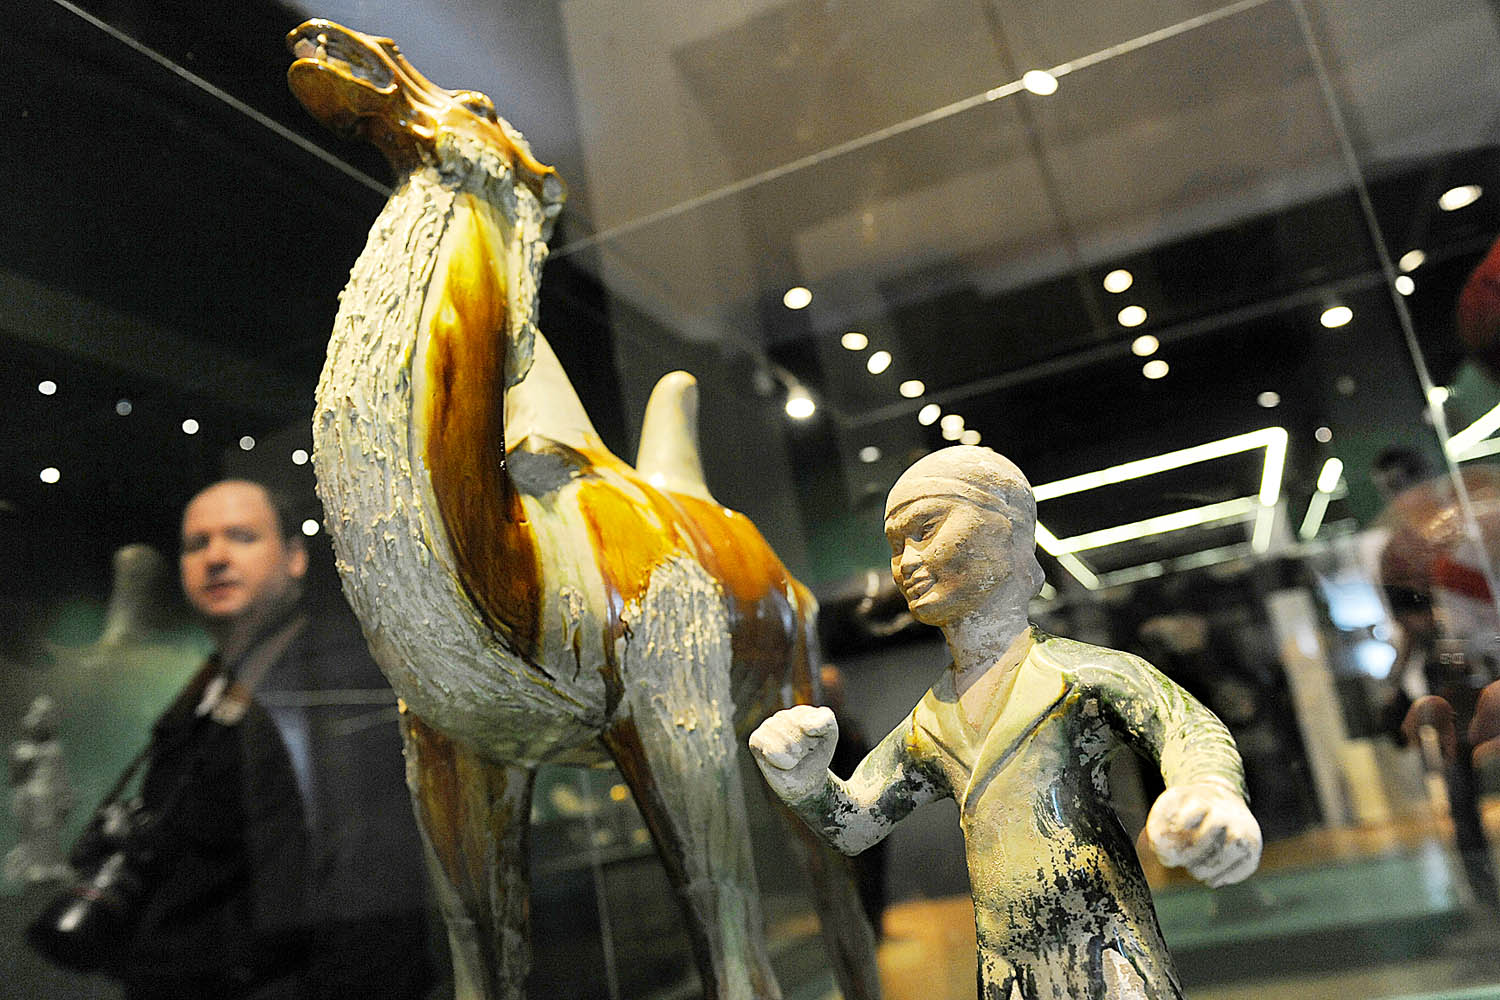 Fajcsák Györgyi, a Hopp Ferenc Kelet-ázsiai Múzeum igazgatója rendezte a mostani kiállítást. Az agyaghadsereg és a mostanihoz hasonló kínai kiállítás utoljára 1988-ban vendégeskedett Budapesten, a Nemzeti Múzeumban, melyet akkor 220 ezren láttak